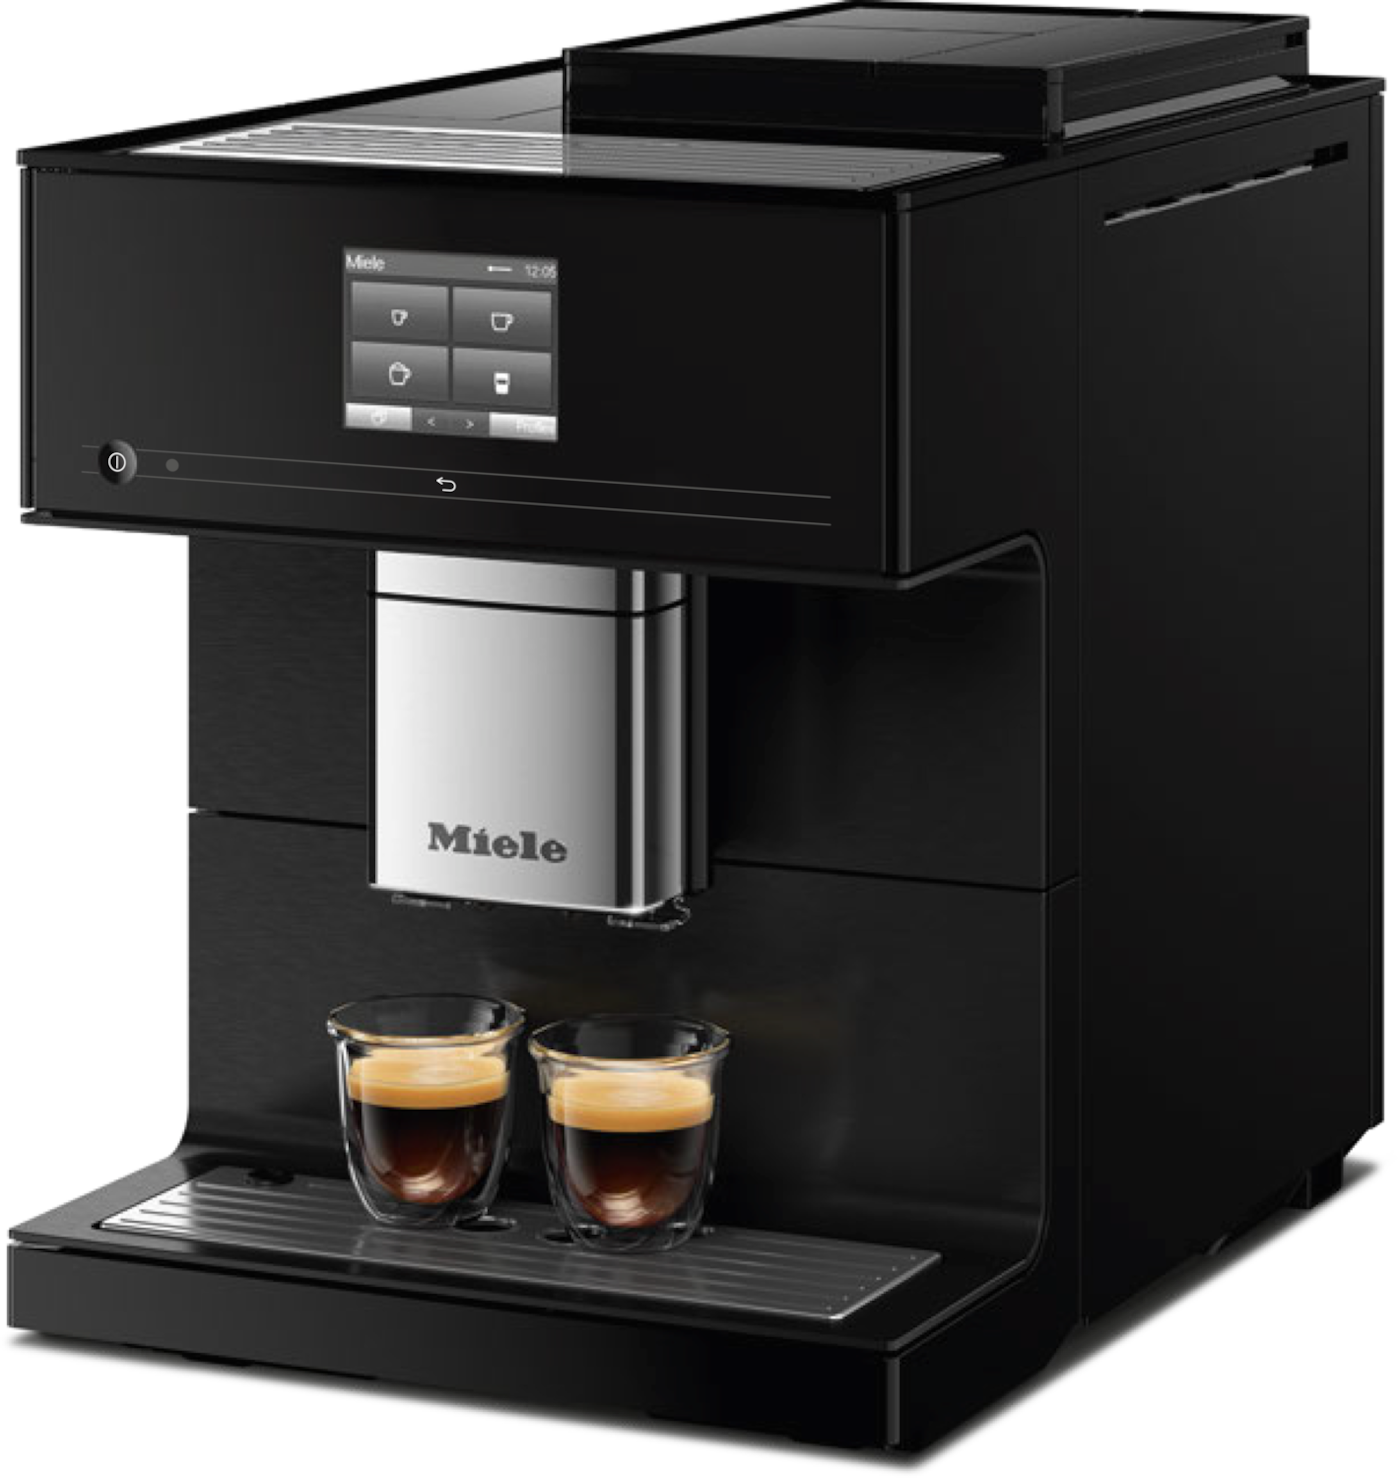 CM 7750 CoffeeSelect kohvimasin 3 kohvioa anumaga ja AutoDescale funktsiooniga product photo View1 ZOOM